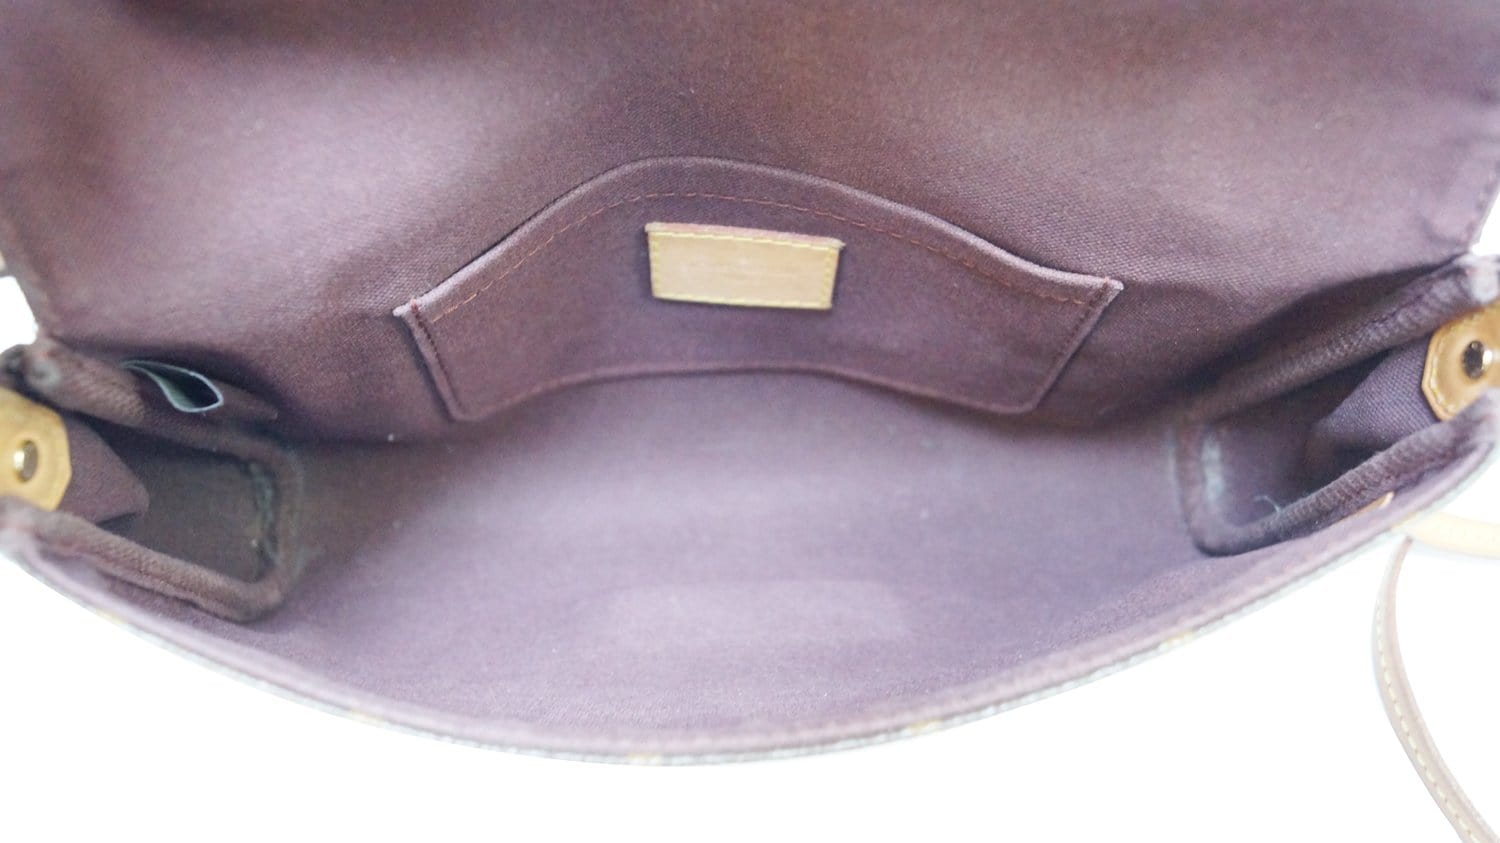 Louis Vuitton Favorite Shoulder bag 342604